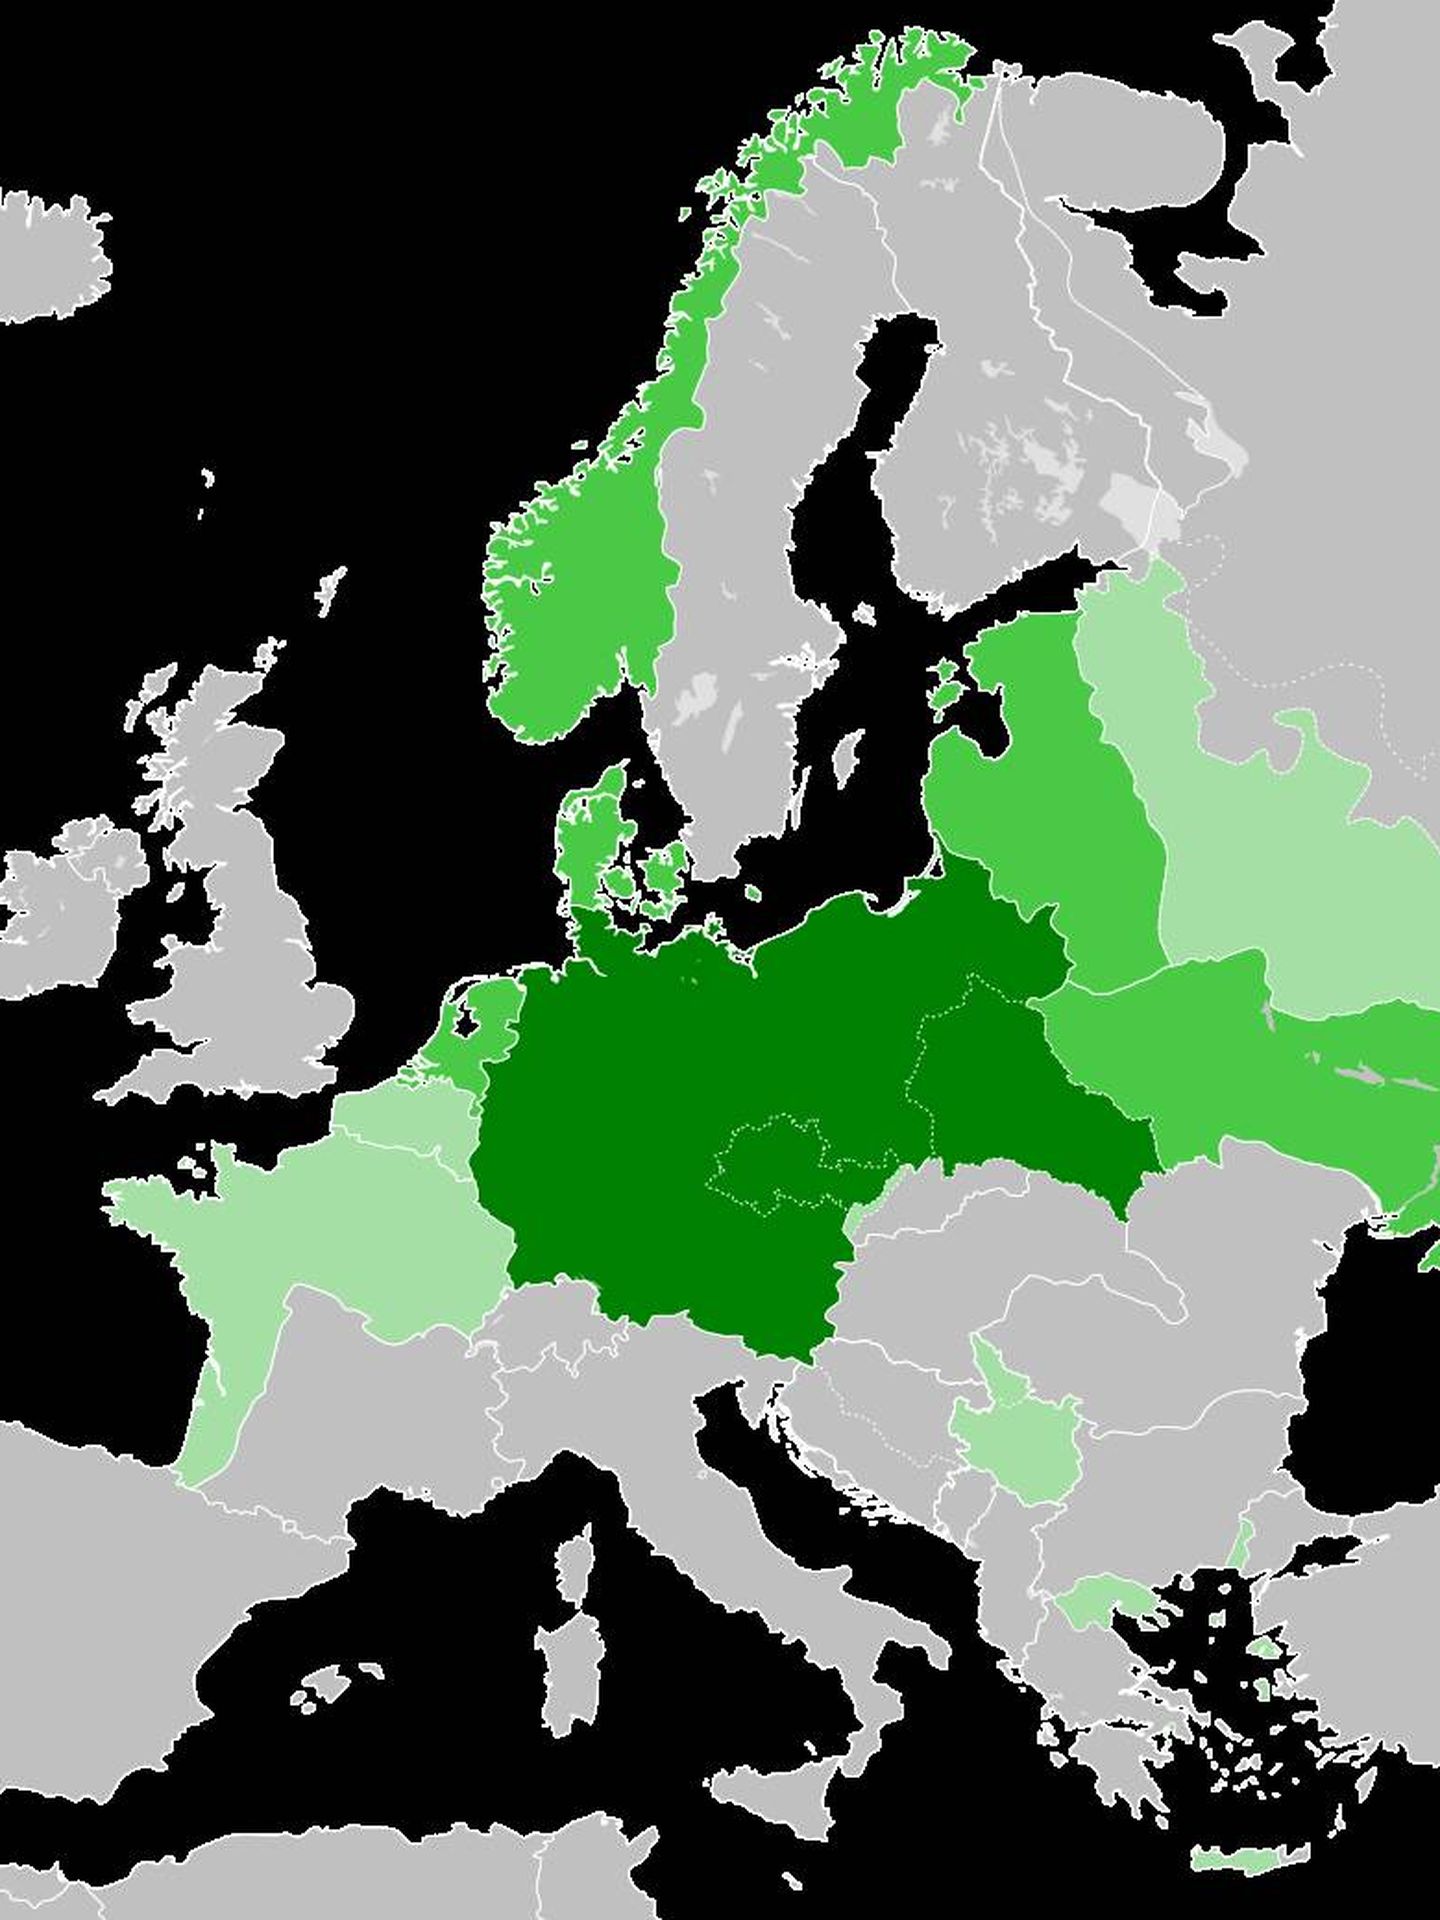 En verde oscuro, la Gran Alemania del III Reich. (Wikipedia)